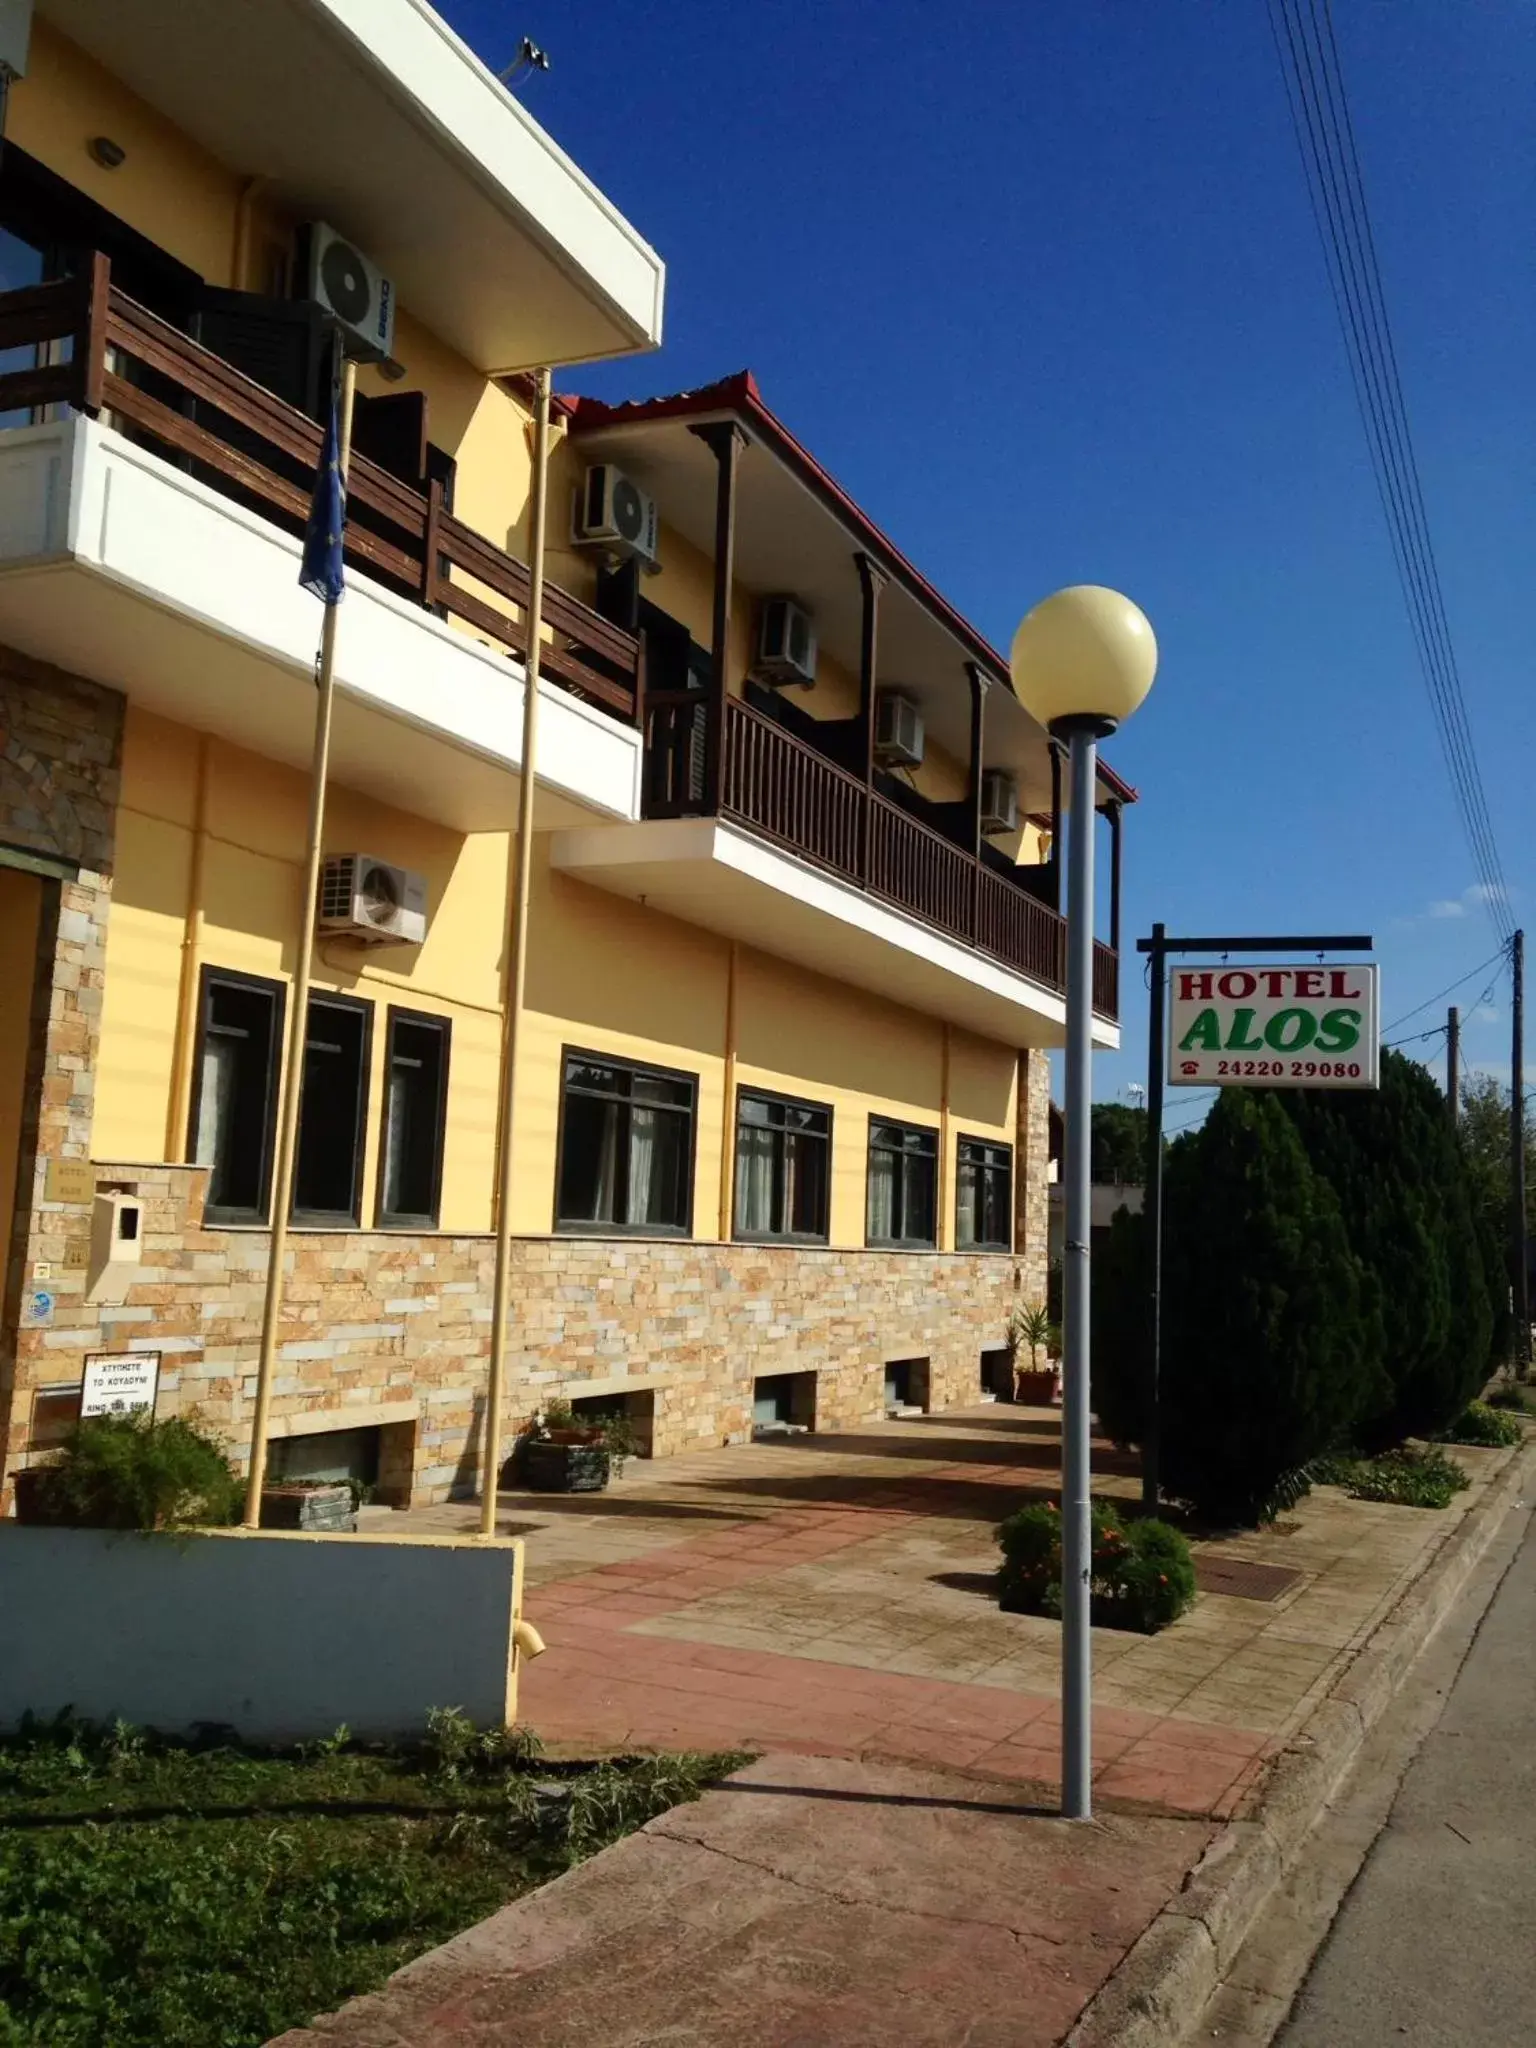 Property Building in Hotel Alos